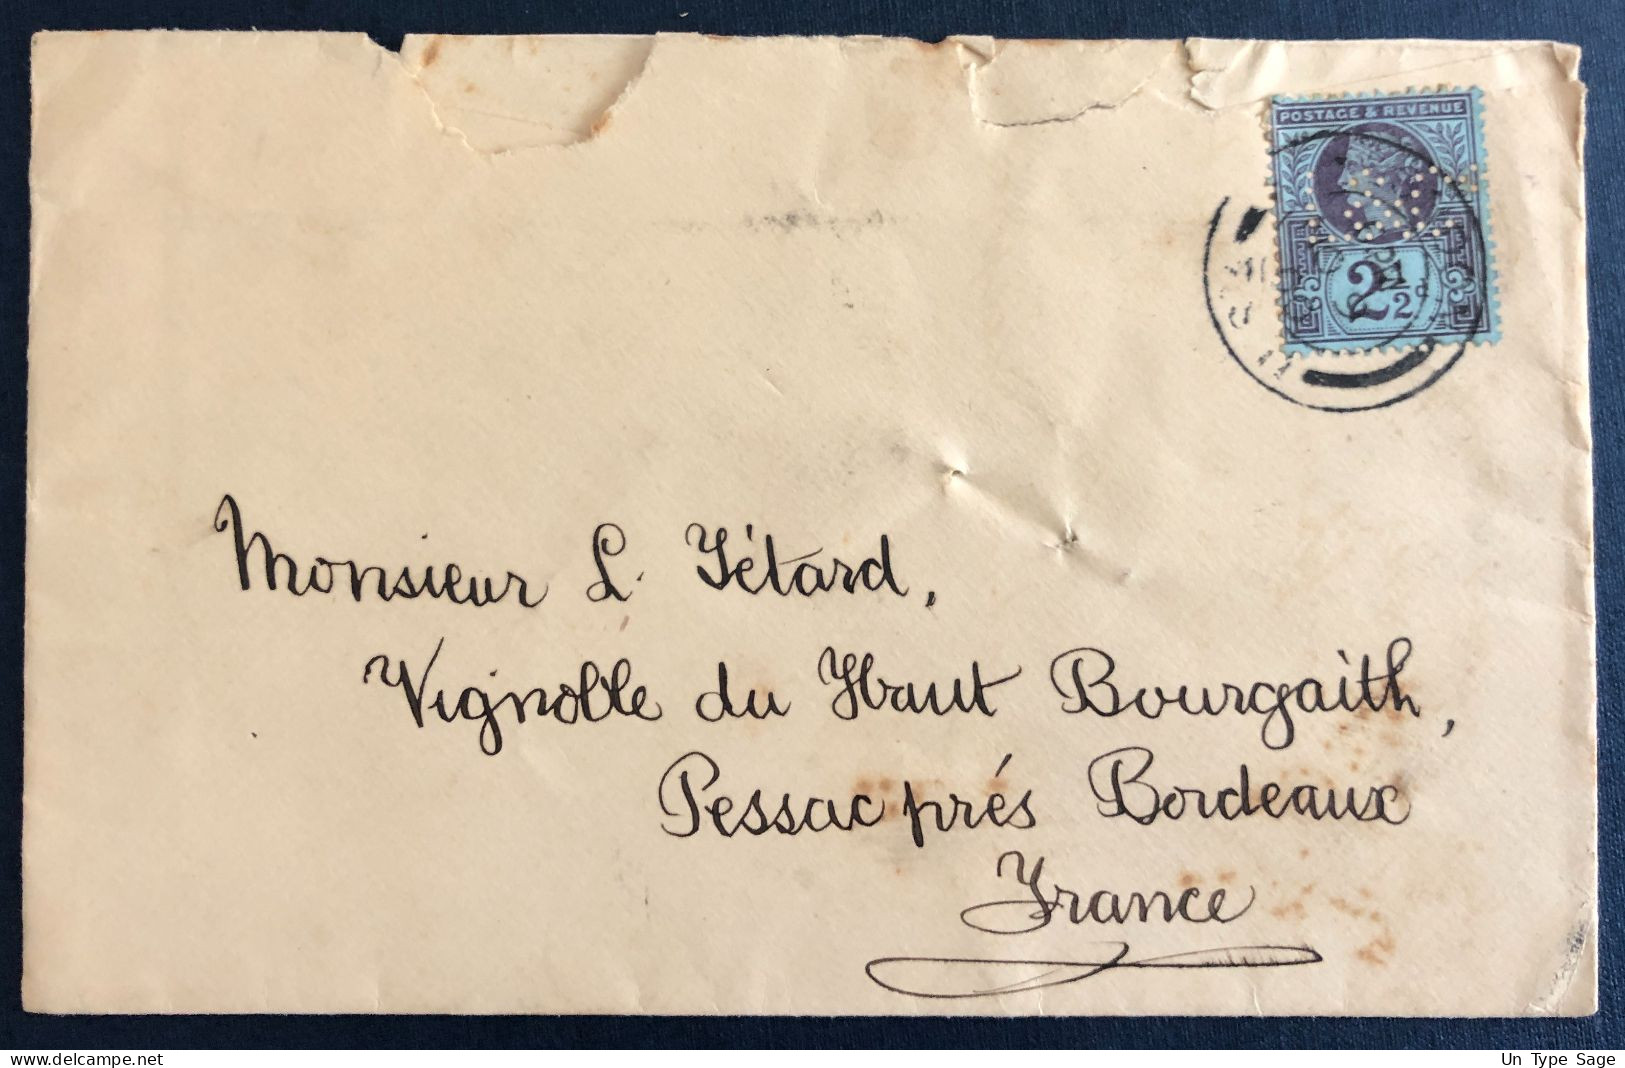 Grande-Bretagne - Divers, Perforé Sur Enveloppe 1900, Pour Bordeaux - (N130) - Briefe U. Dokumente